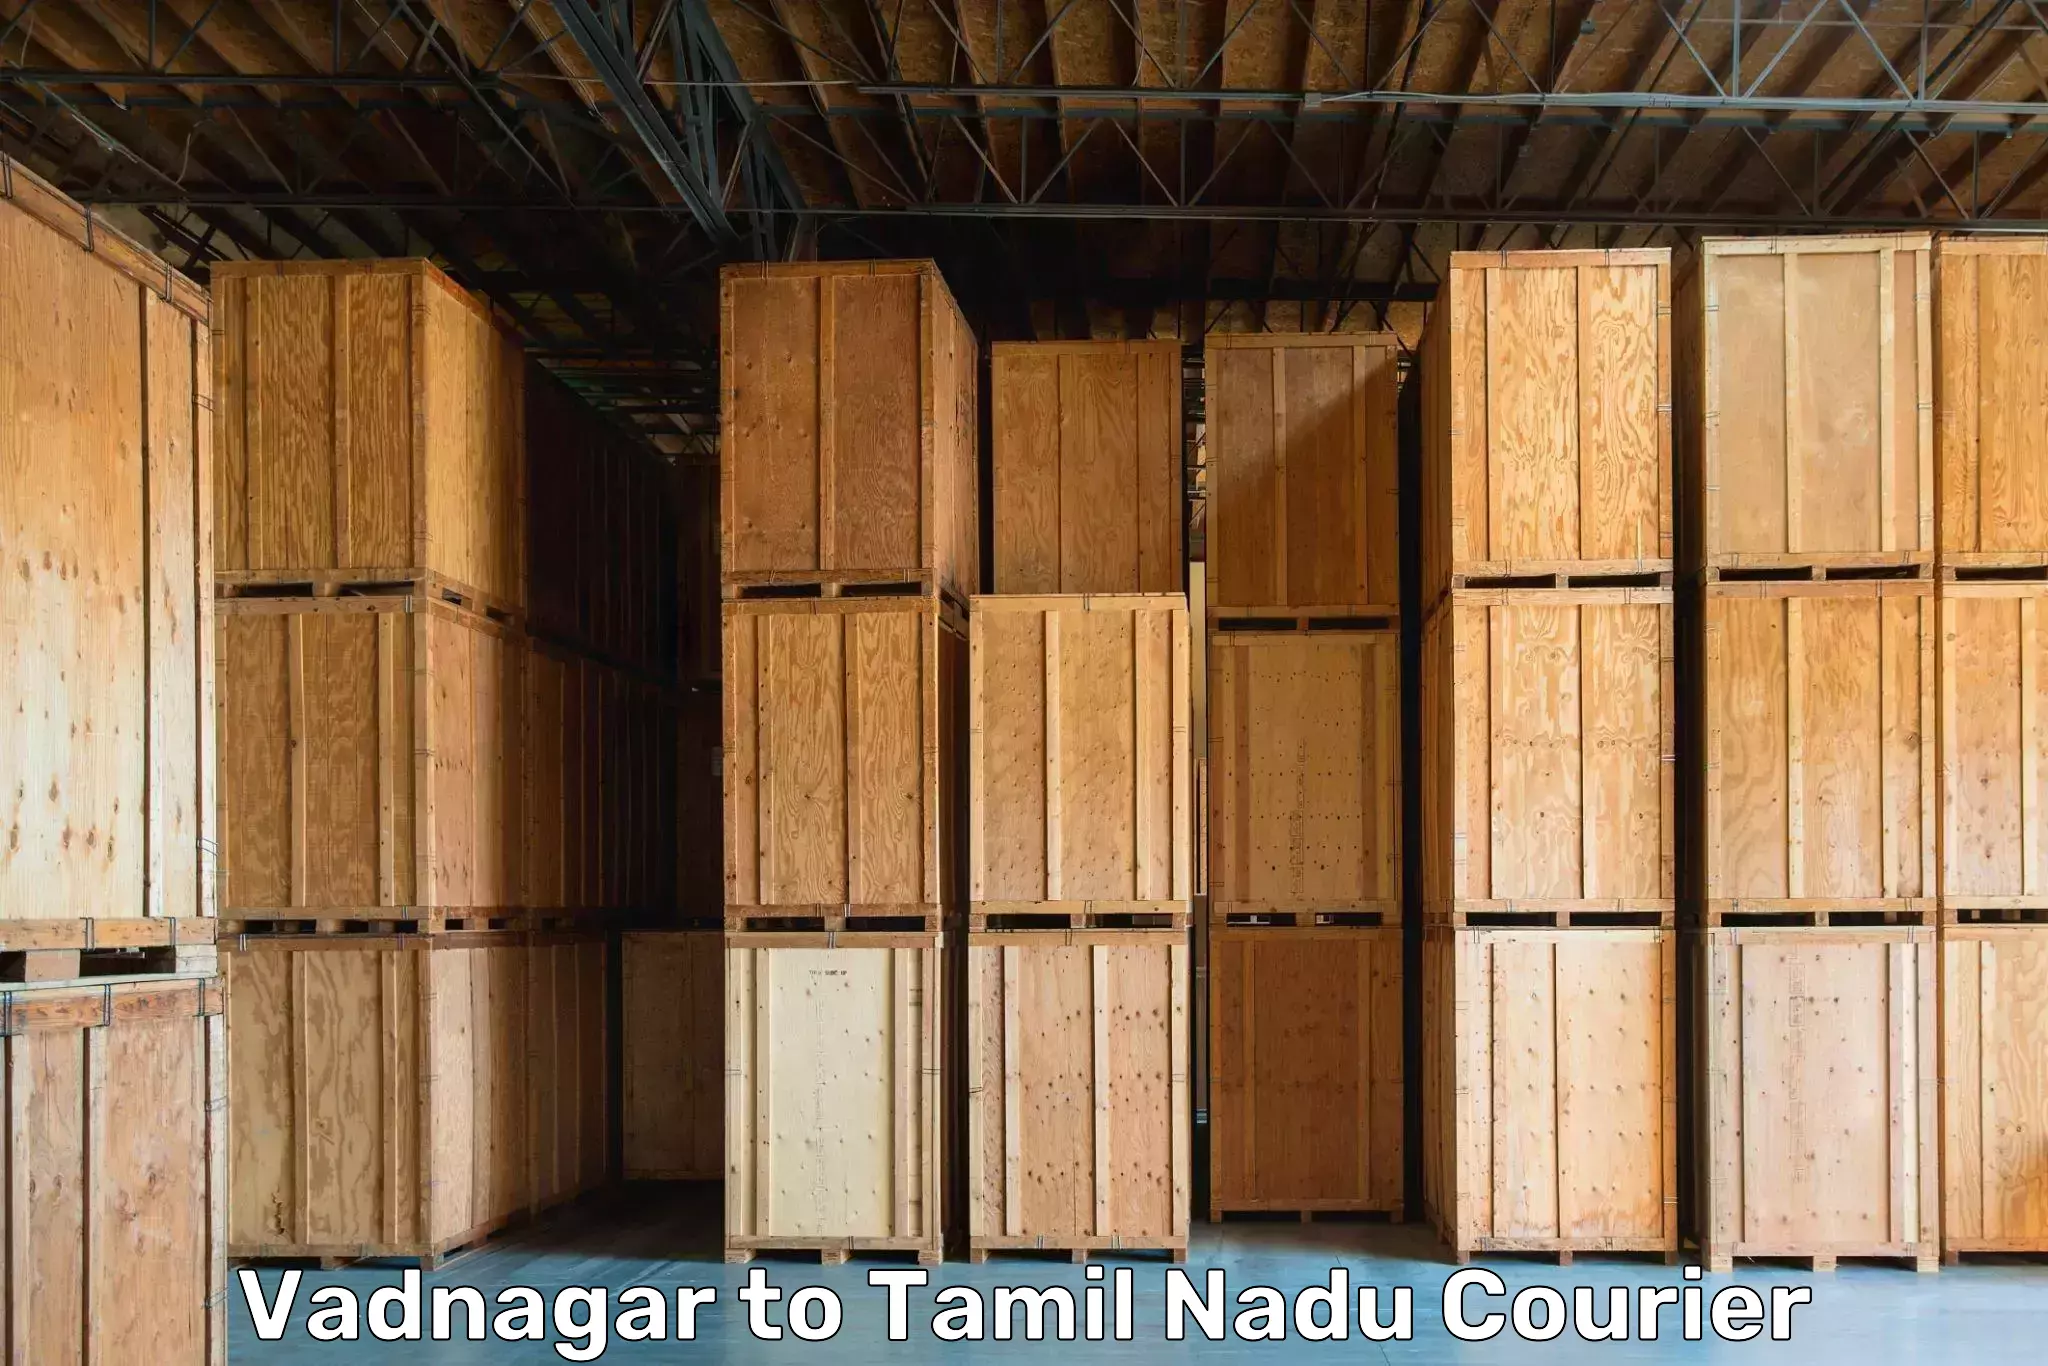 Moving and storage services Vadnagar to Villupuram